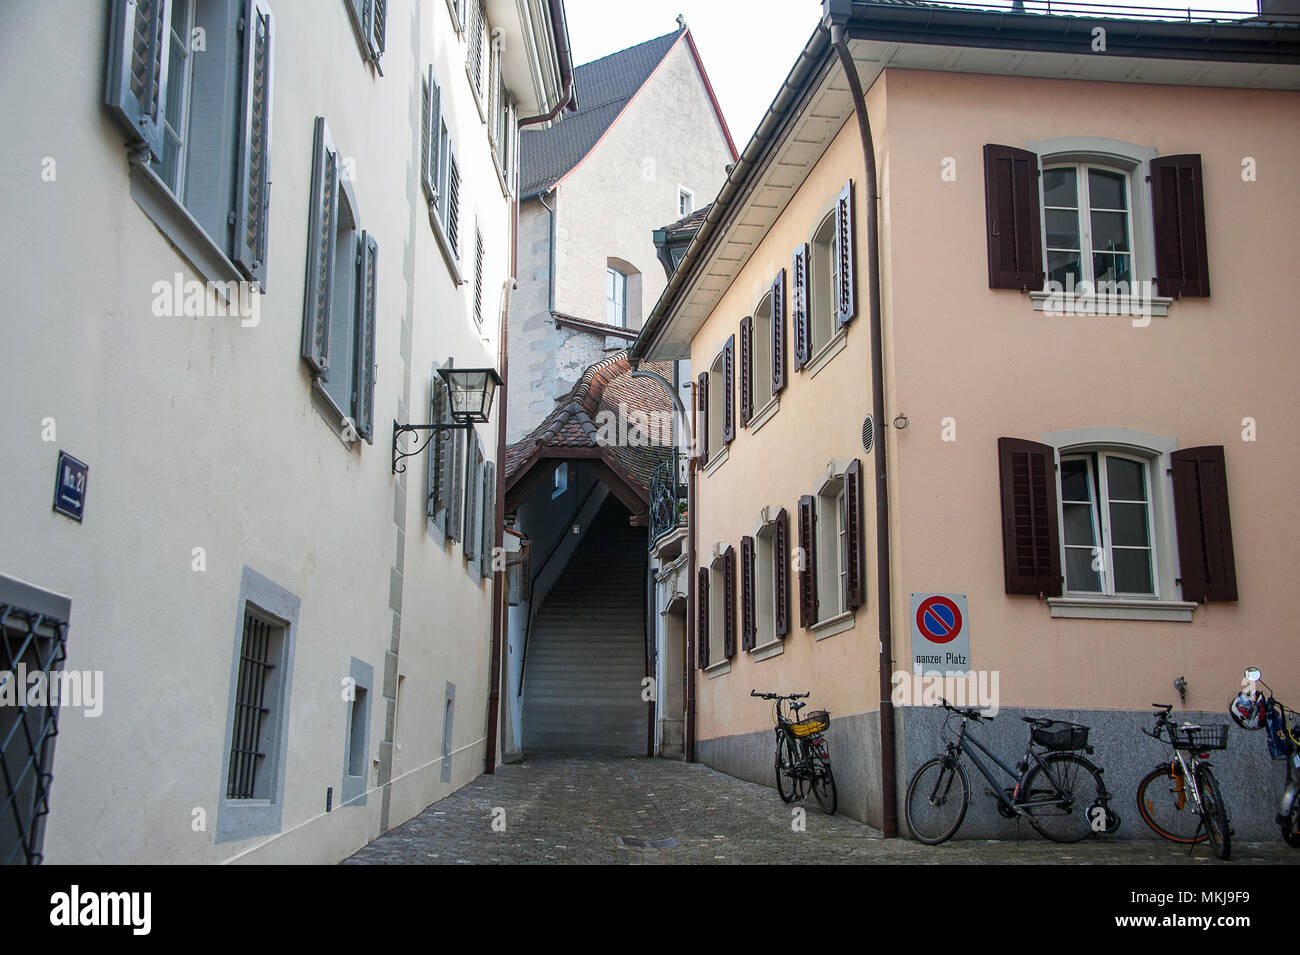 Ciudad vieja de Zug, Suiza. Casas de color pastel y estacionar bicicletas, en una zona de acceso restringido con 'no parking" en cualquier lugar de signo (ganzer platz) t Foto de stock